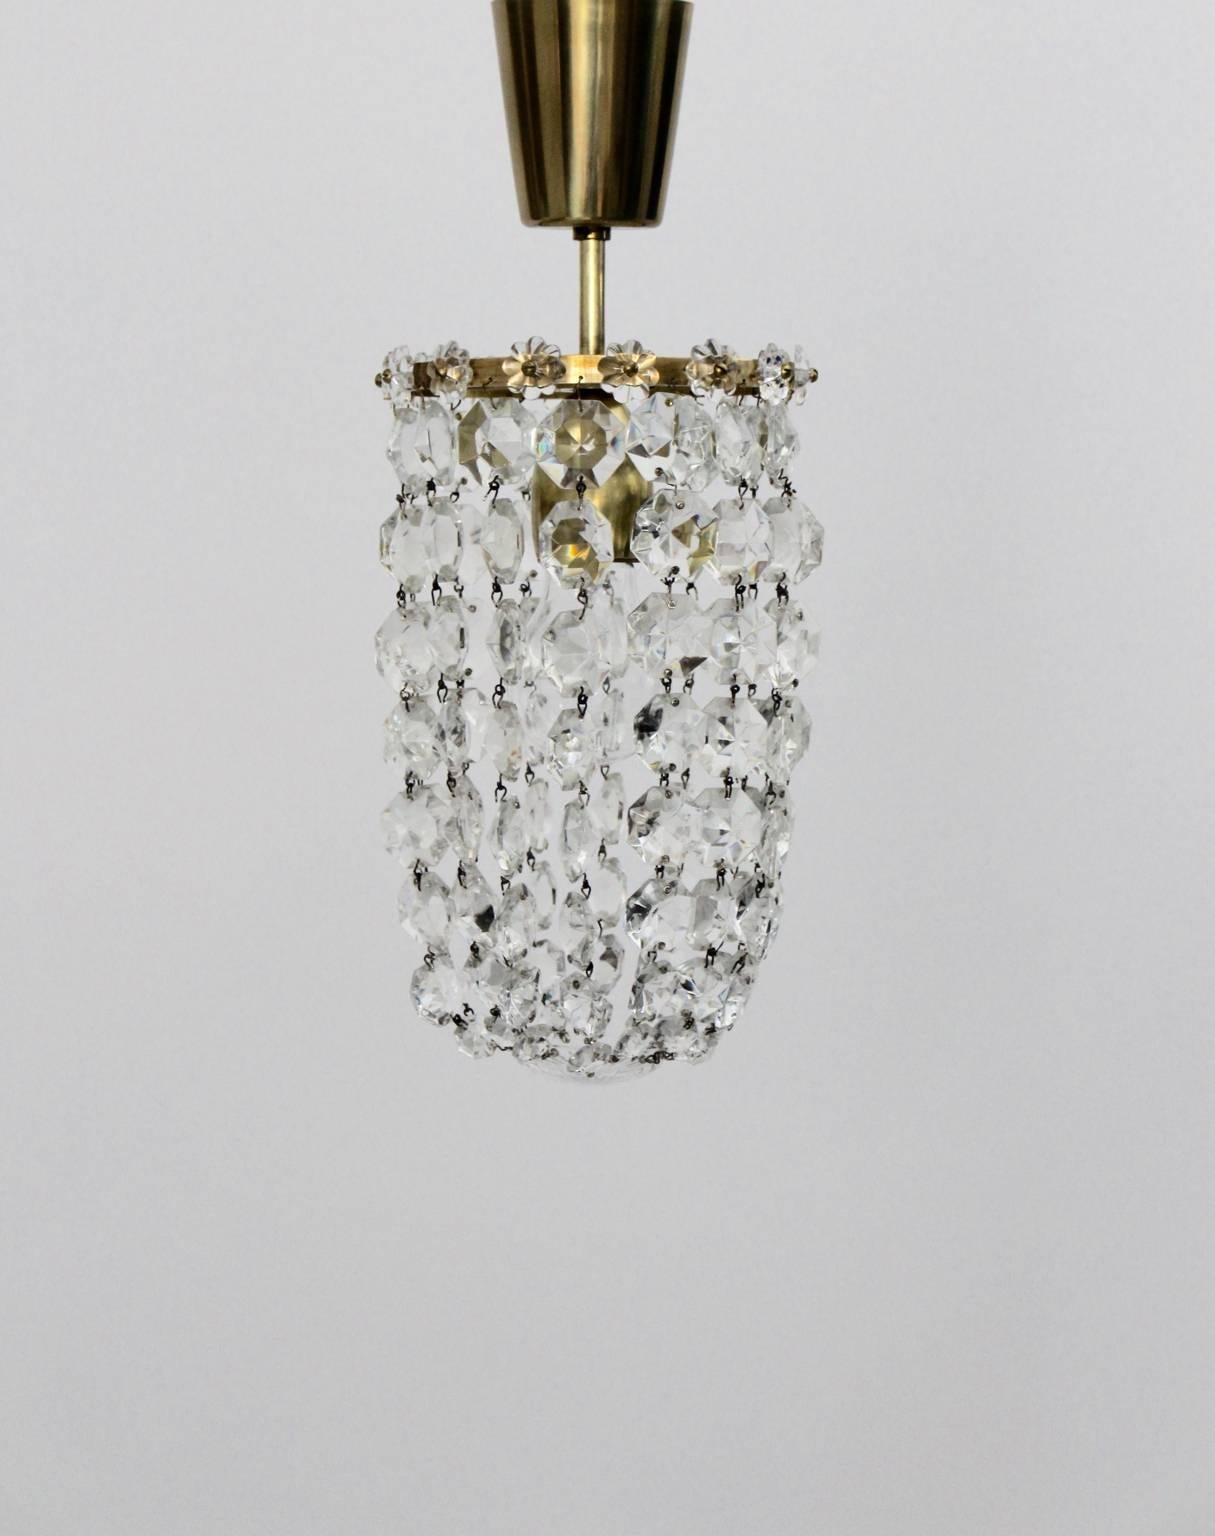 Dieser reizende Kronleuchter aus geschliffenem Kristallglas wurde entworfen und hergestellt
von Bakalowits & Soehne, Wien 1950er Jahre.
Das Material des Gestells ist Messing und der Lampenschirm wurde mit 112 geschliffenen Kristallgläsern und 14